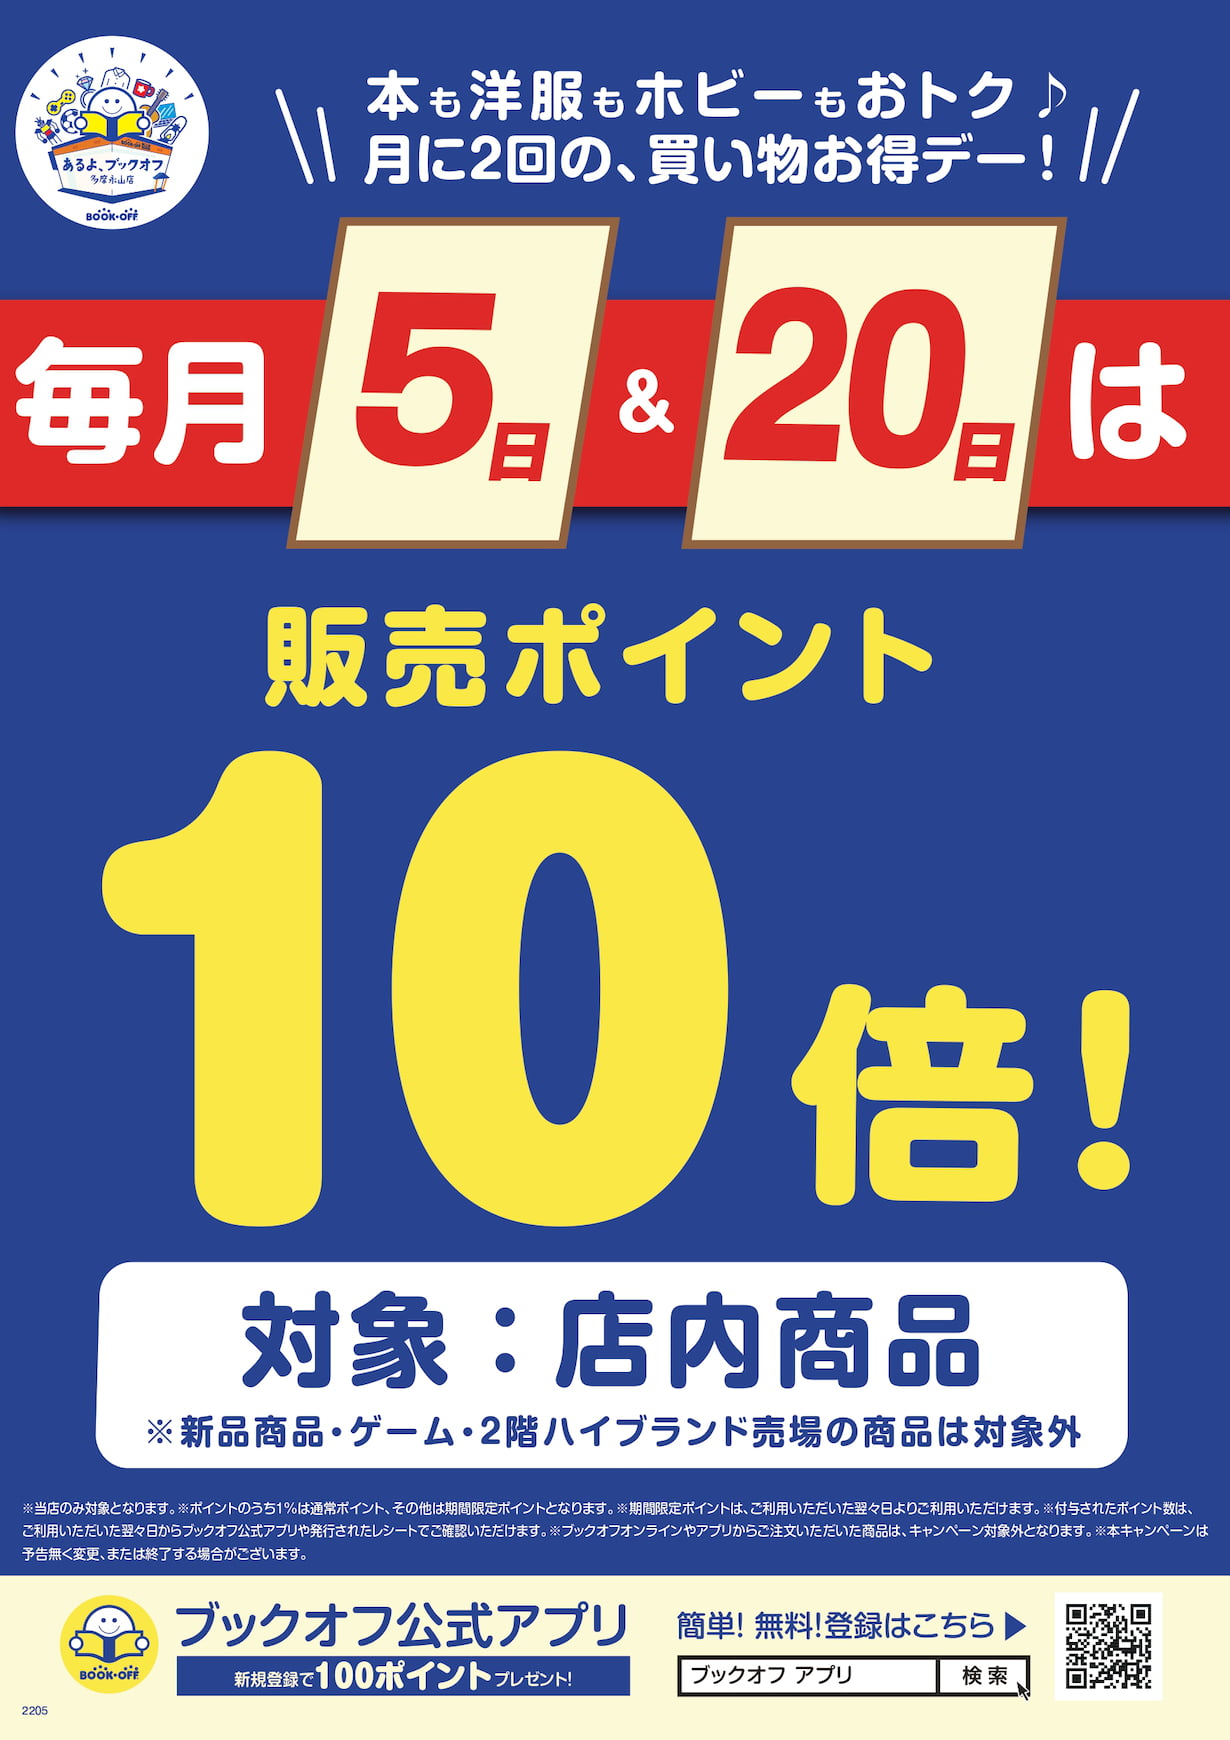 ブックオフスーパーバザー多摩永山店で23周年誕生祭が12/9(土)から開催！最大半額の特別セールも【PR】 – 多摩ポン